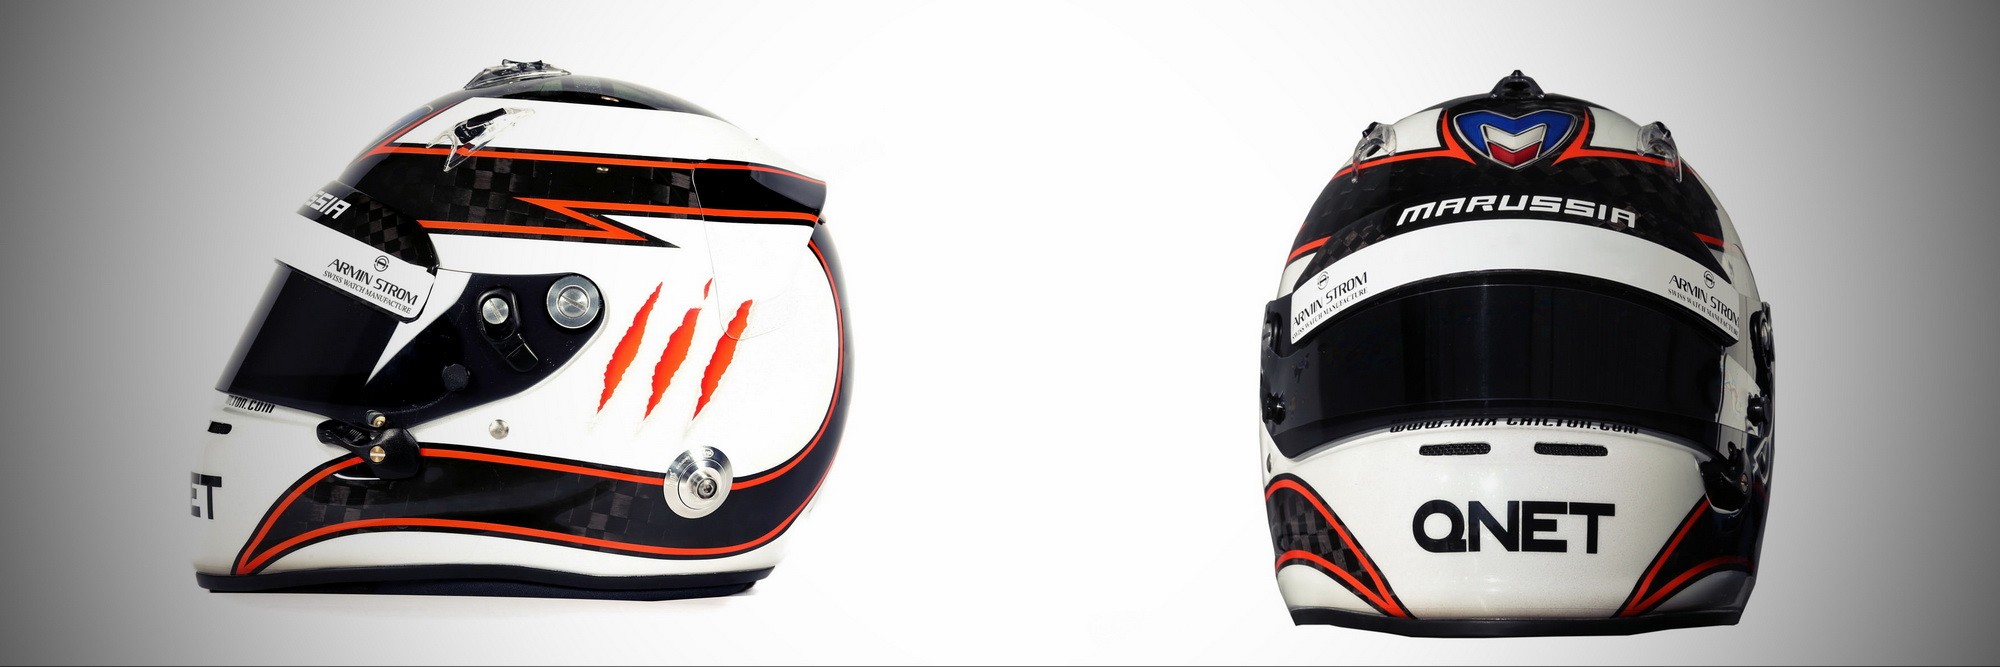 Шлем Макса Чилтона на сезон 2013 года | 2013 helmet of Max Chilton